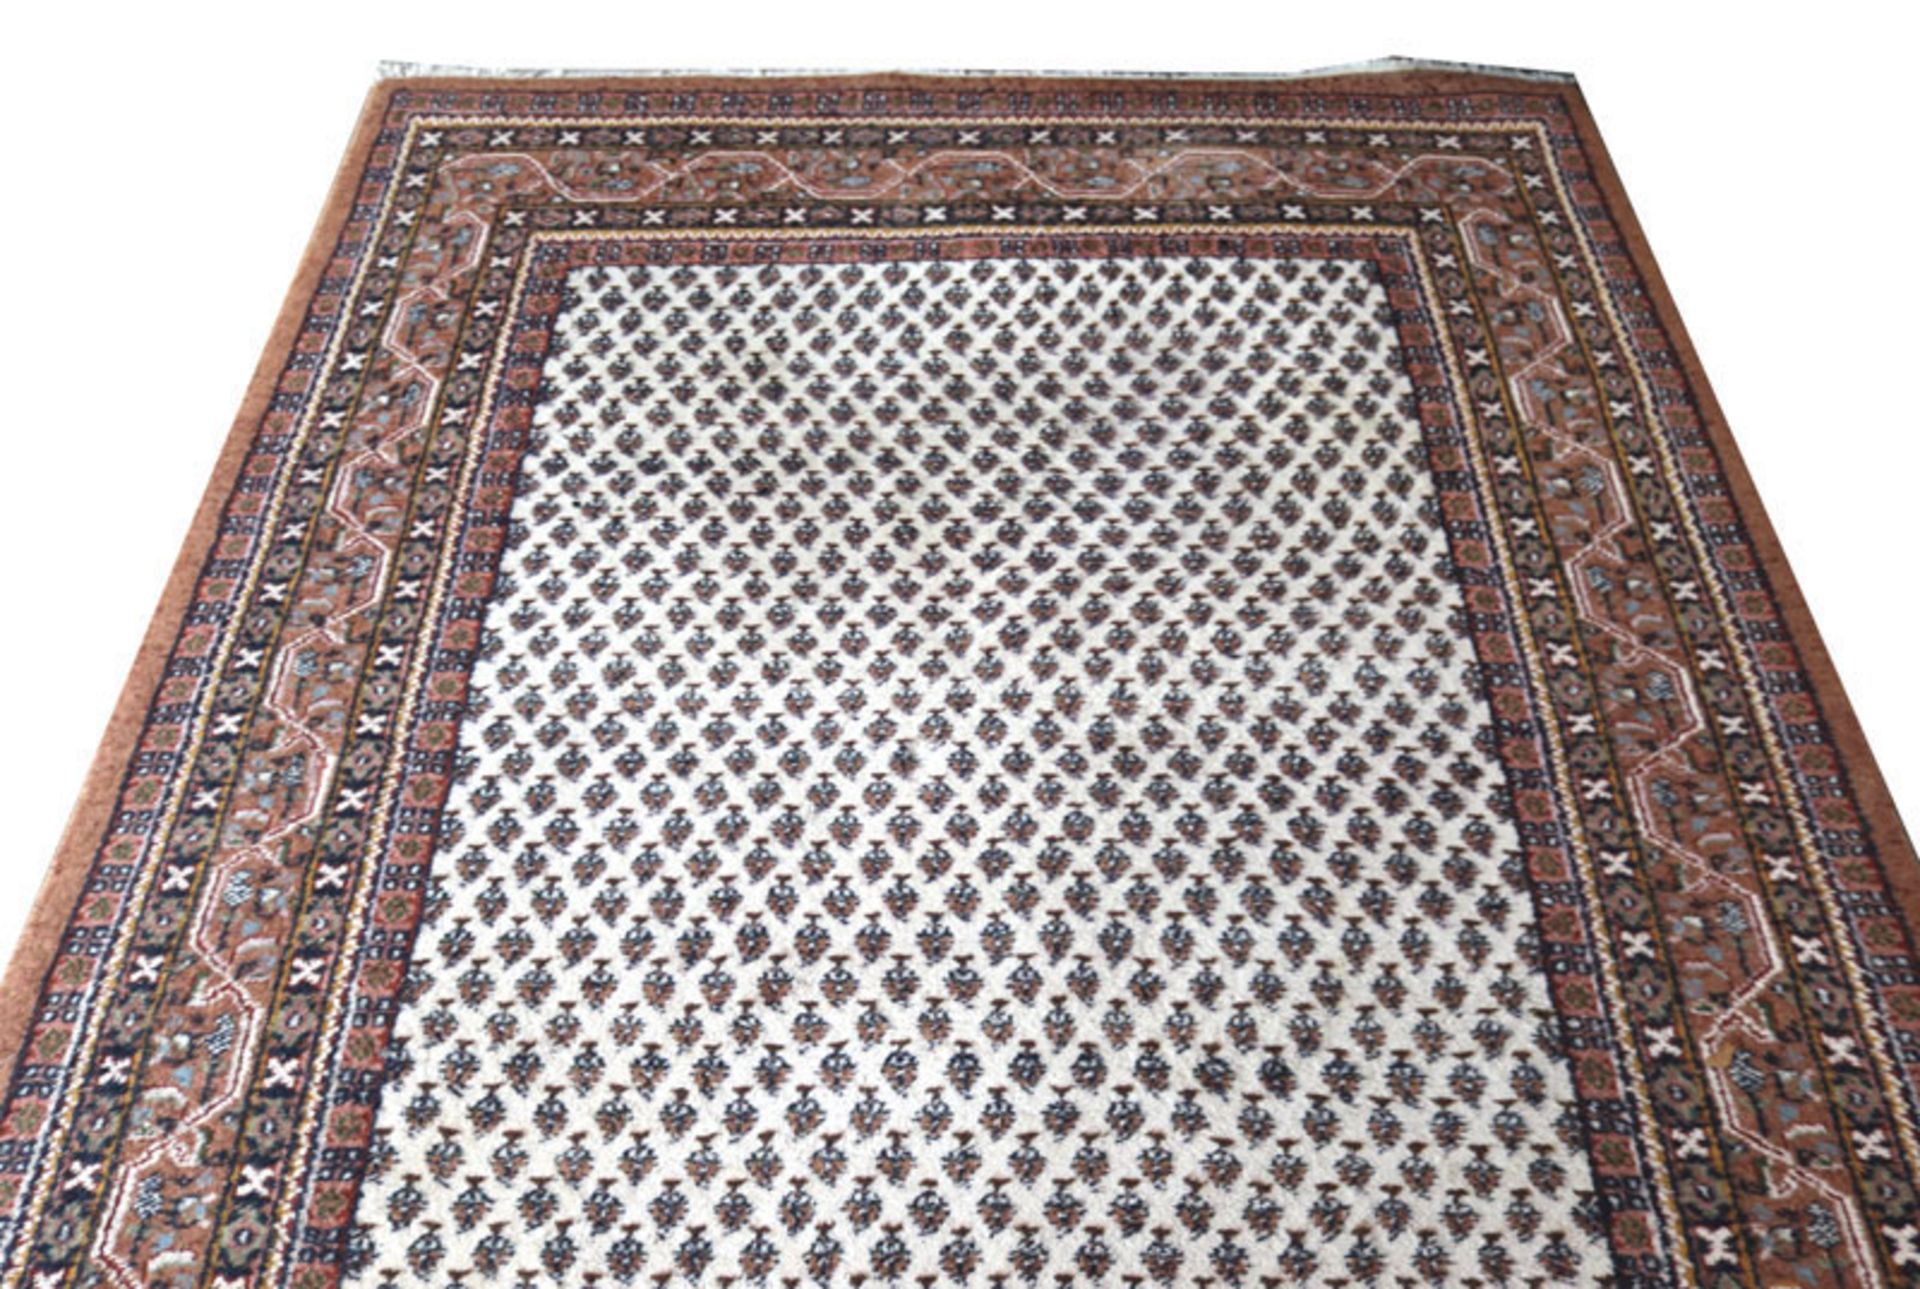 Teppich, Mir, beige/braun, L 240 cm, B 172 cm, Gebrauchsspuren